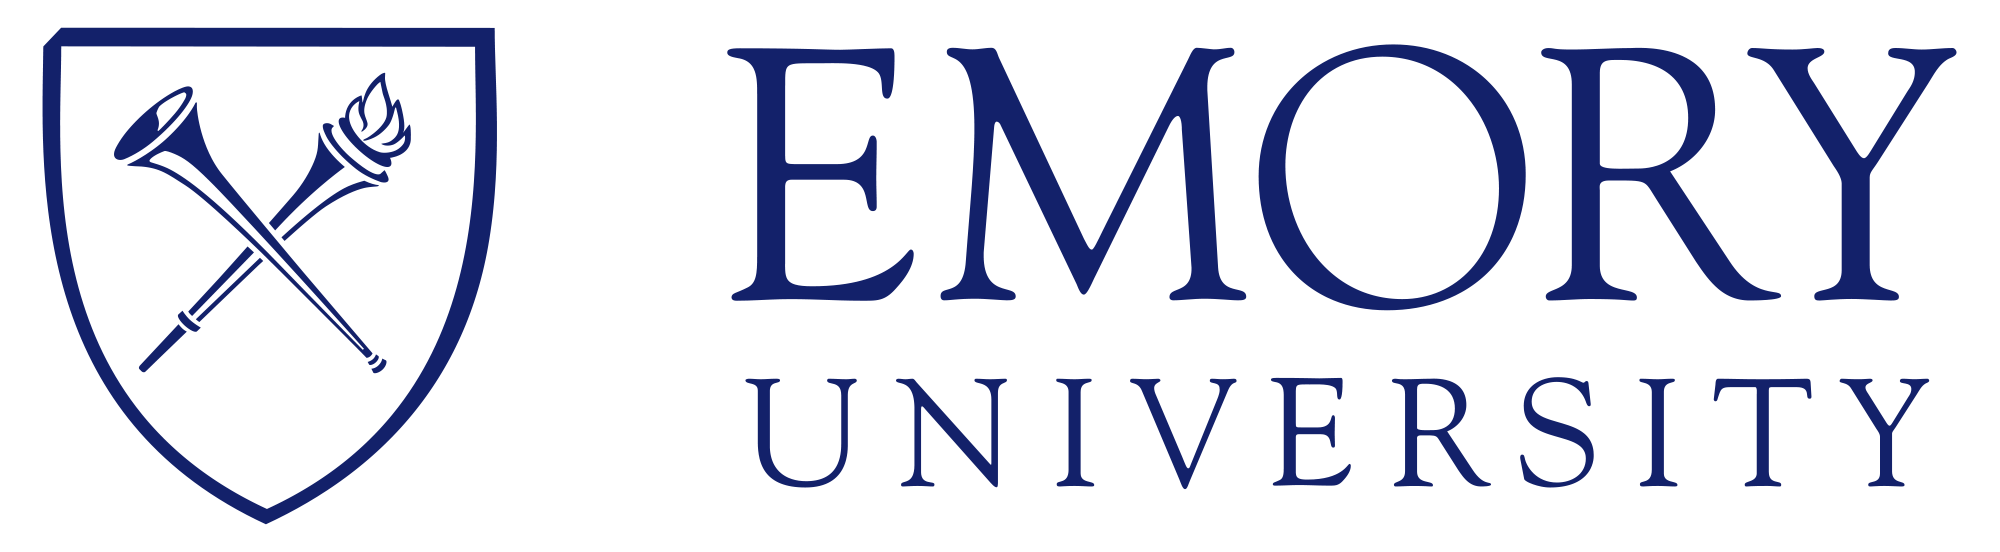 Logo of Emory University with Sheild